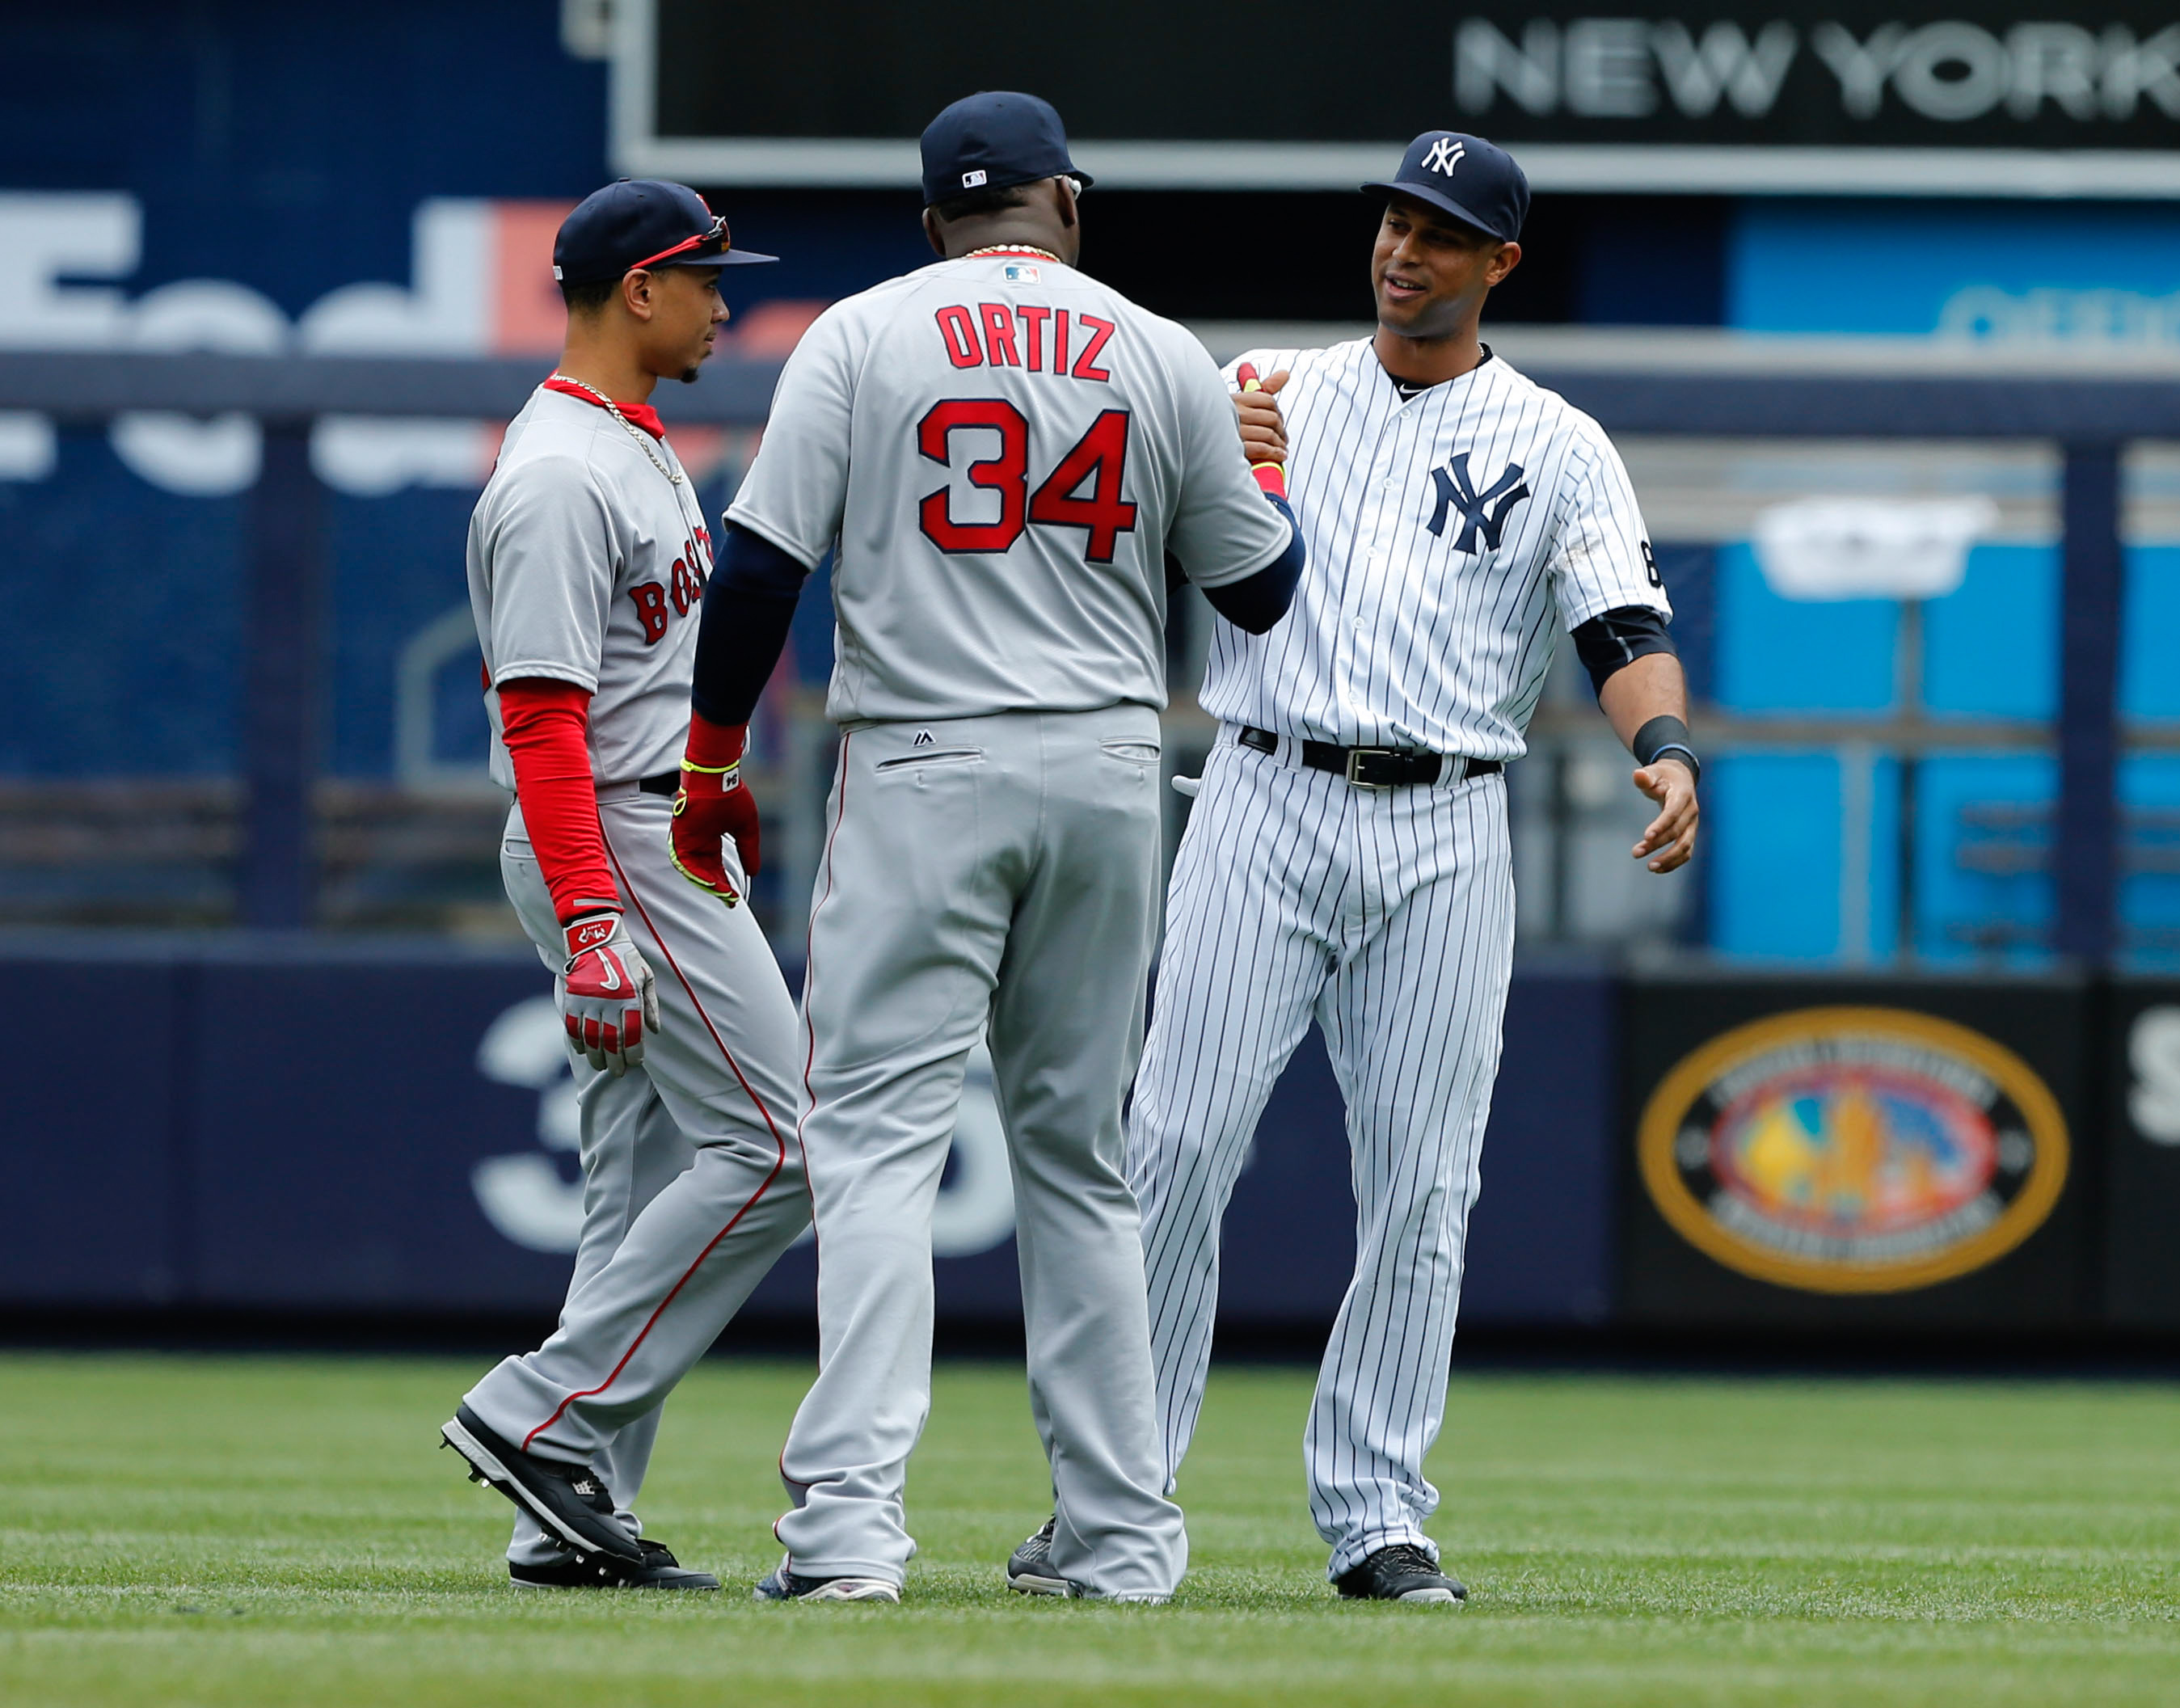 New York Yankees To Honor David Ortiz In Final Game At Yankee Stadium 